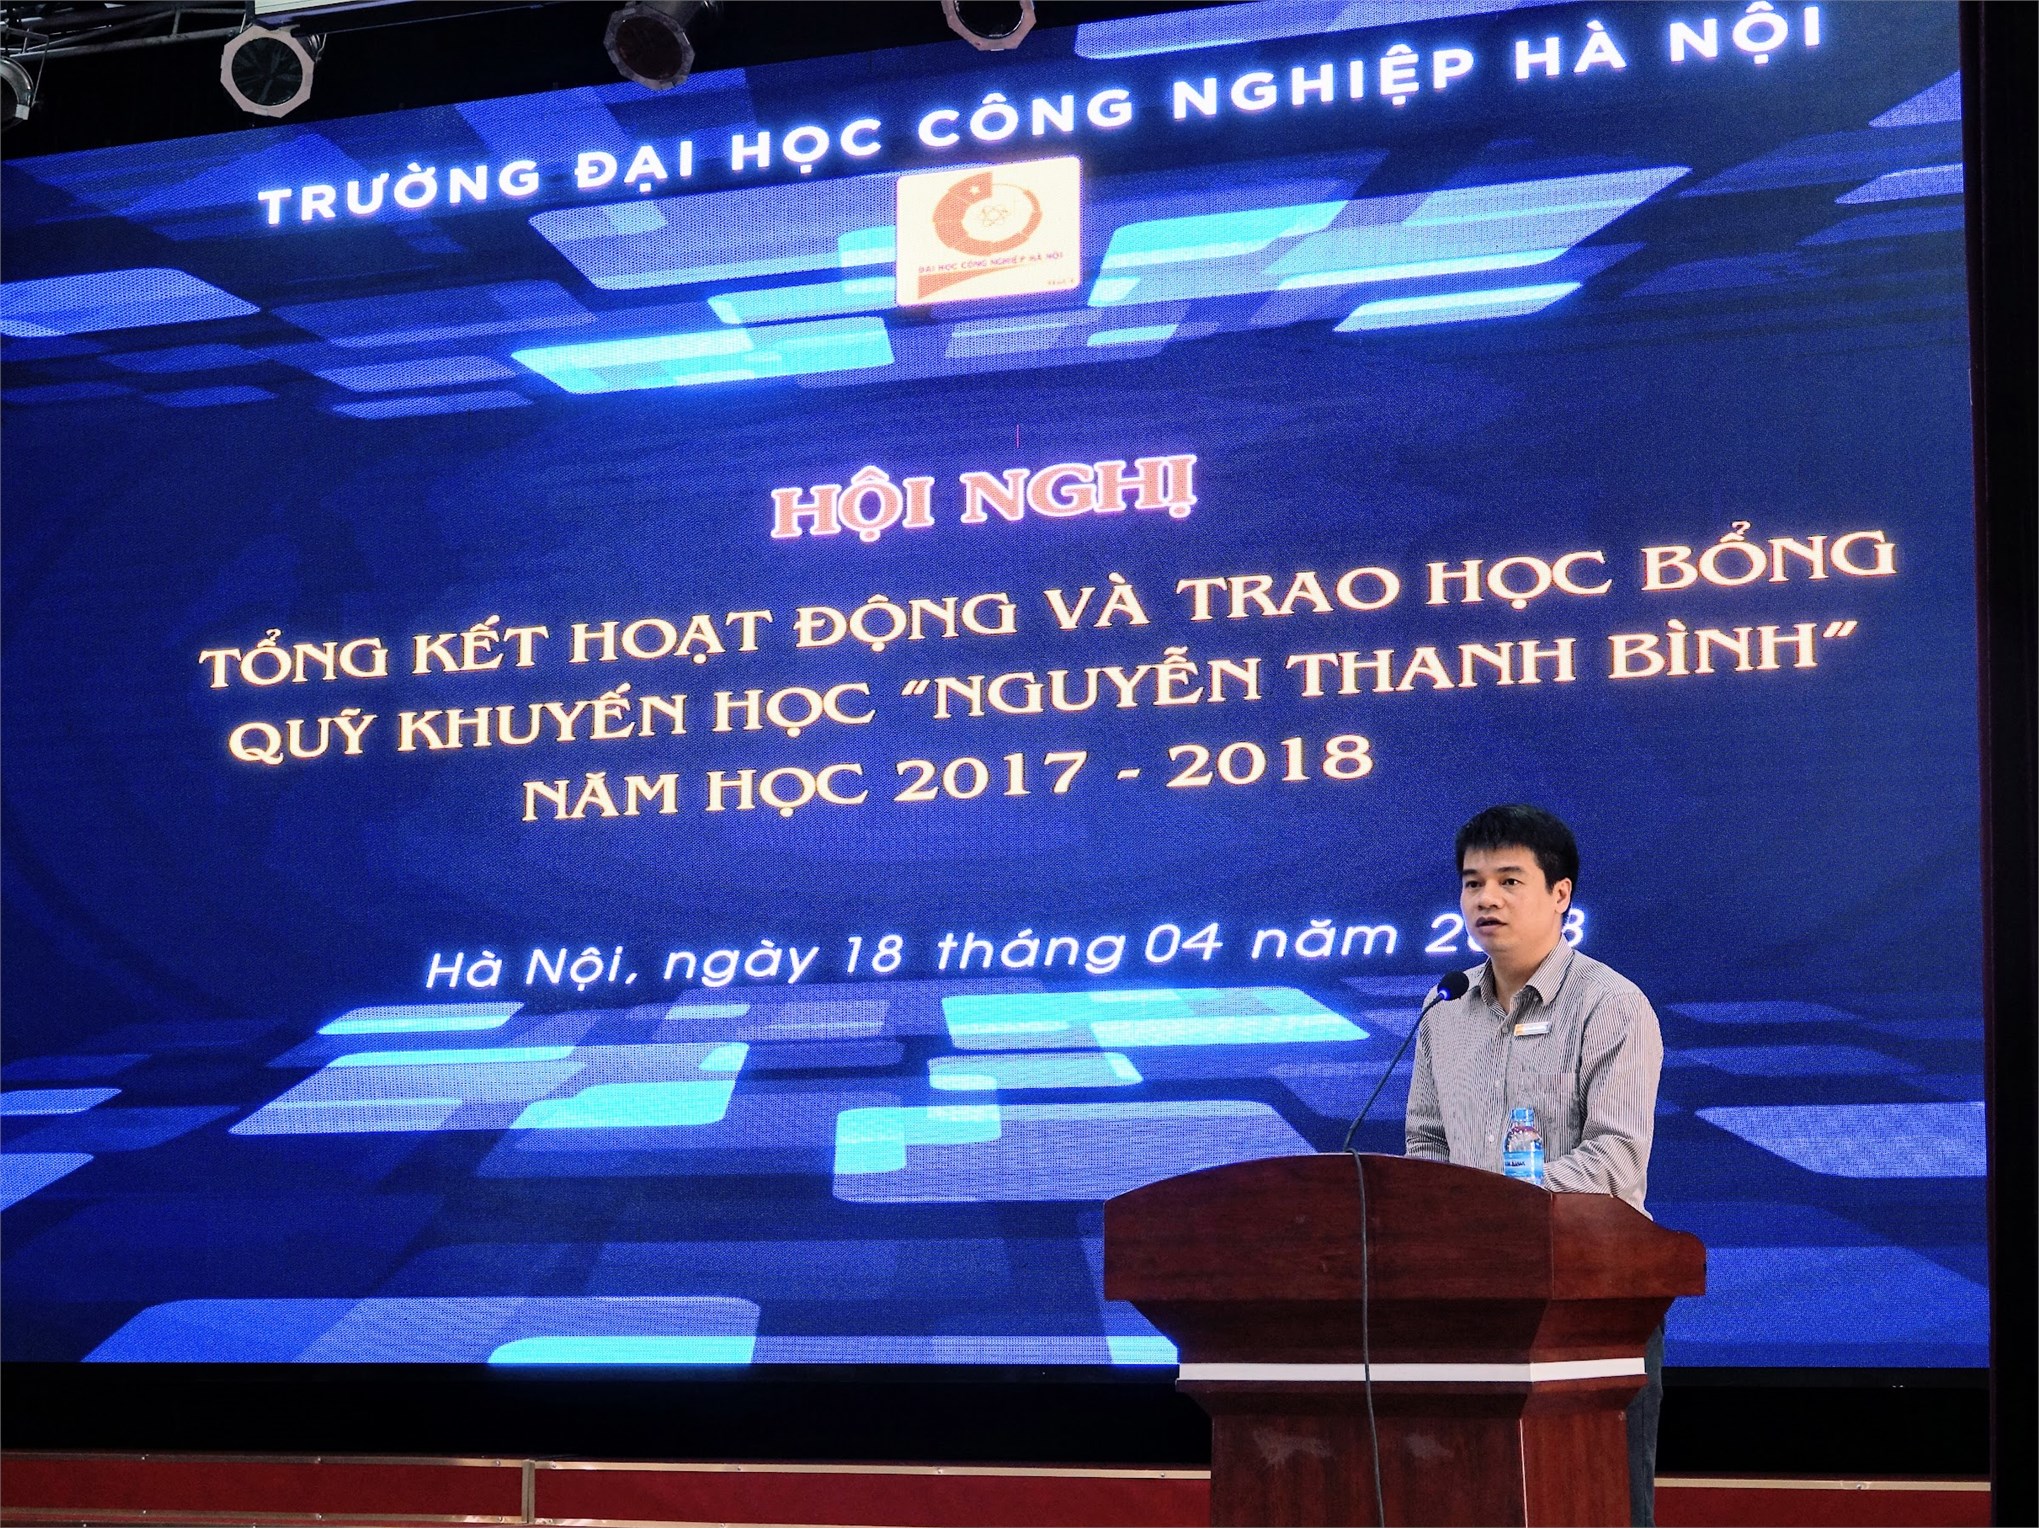 Quỹ khuyến học Nguyễn Thanh Bình đạt số dư 6,2 tỷ đồng